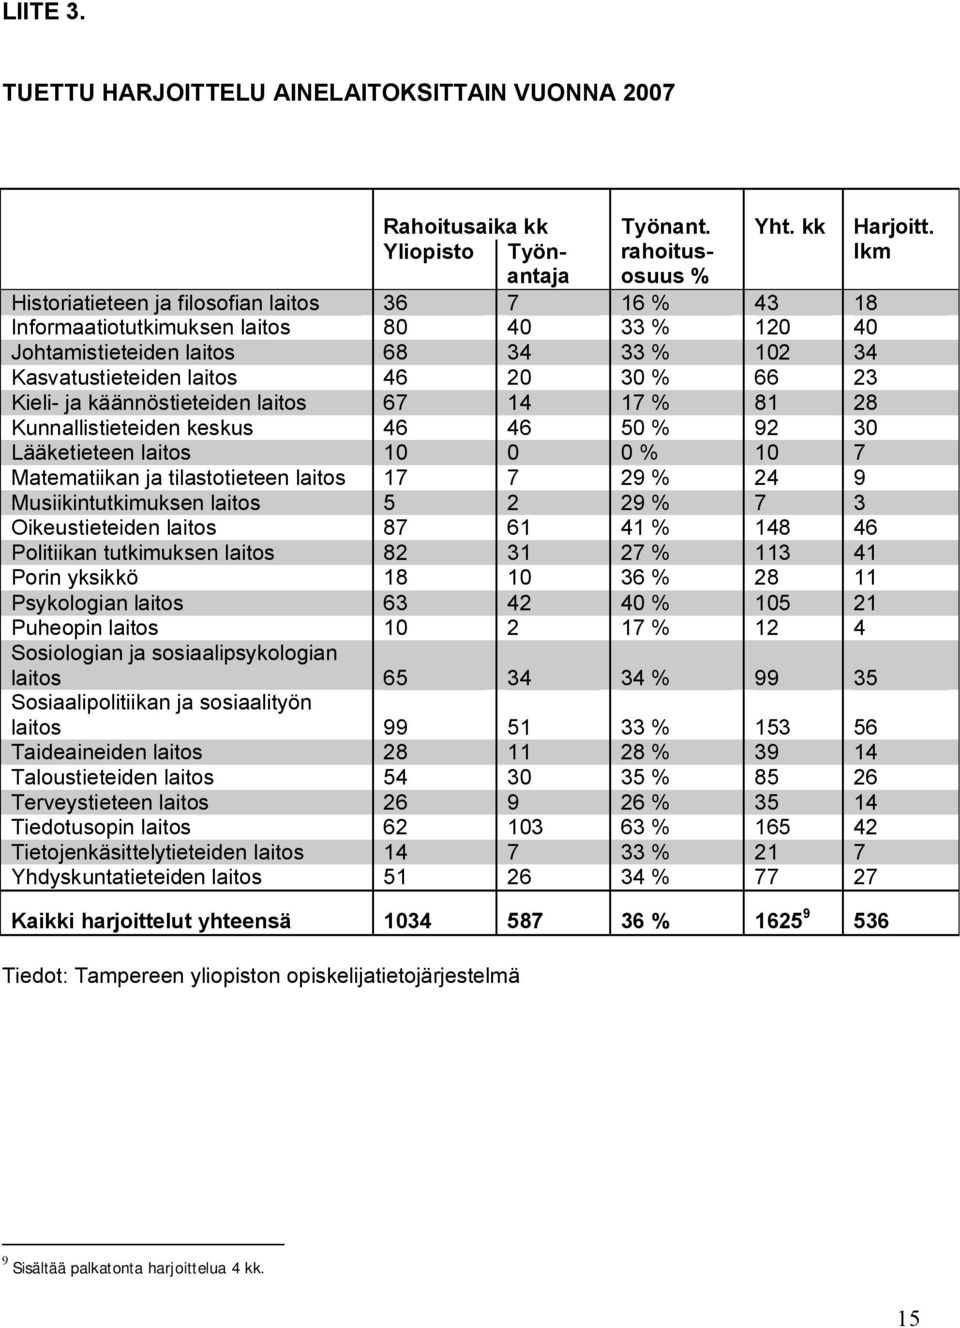 Kasvatustieteiden laitos 46 20 30 % 66 23 Kieli- ja käännöstieteiden laitos 67 14 17 % 81 28 Kunnallistieteiden keskus 46 46 50 % 92 30 Lääketieteen laitos 10 0 0 % 10 7 Matematiikan ja